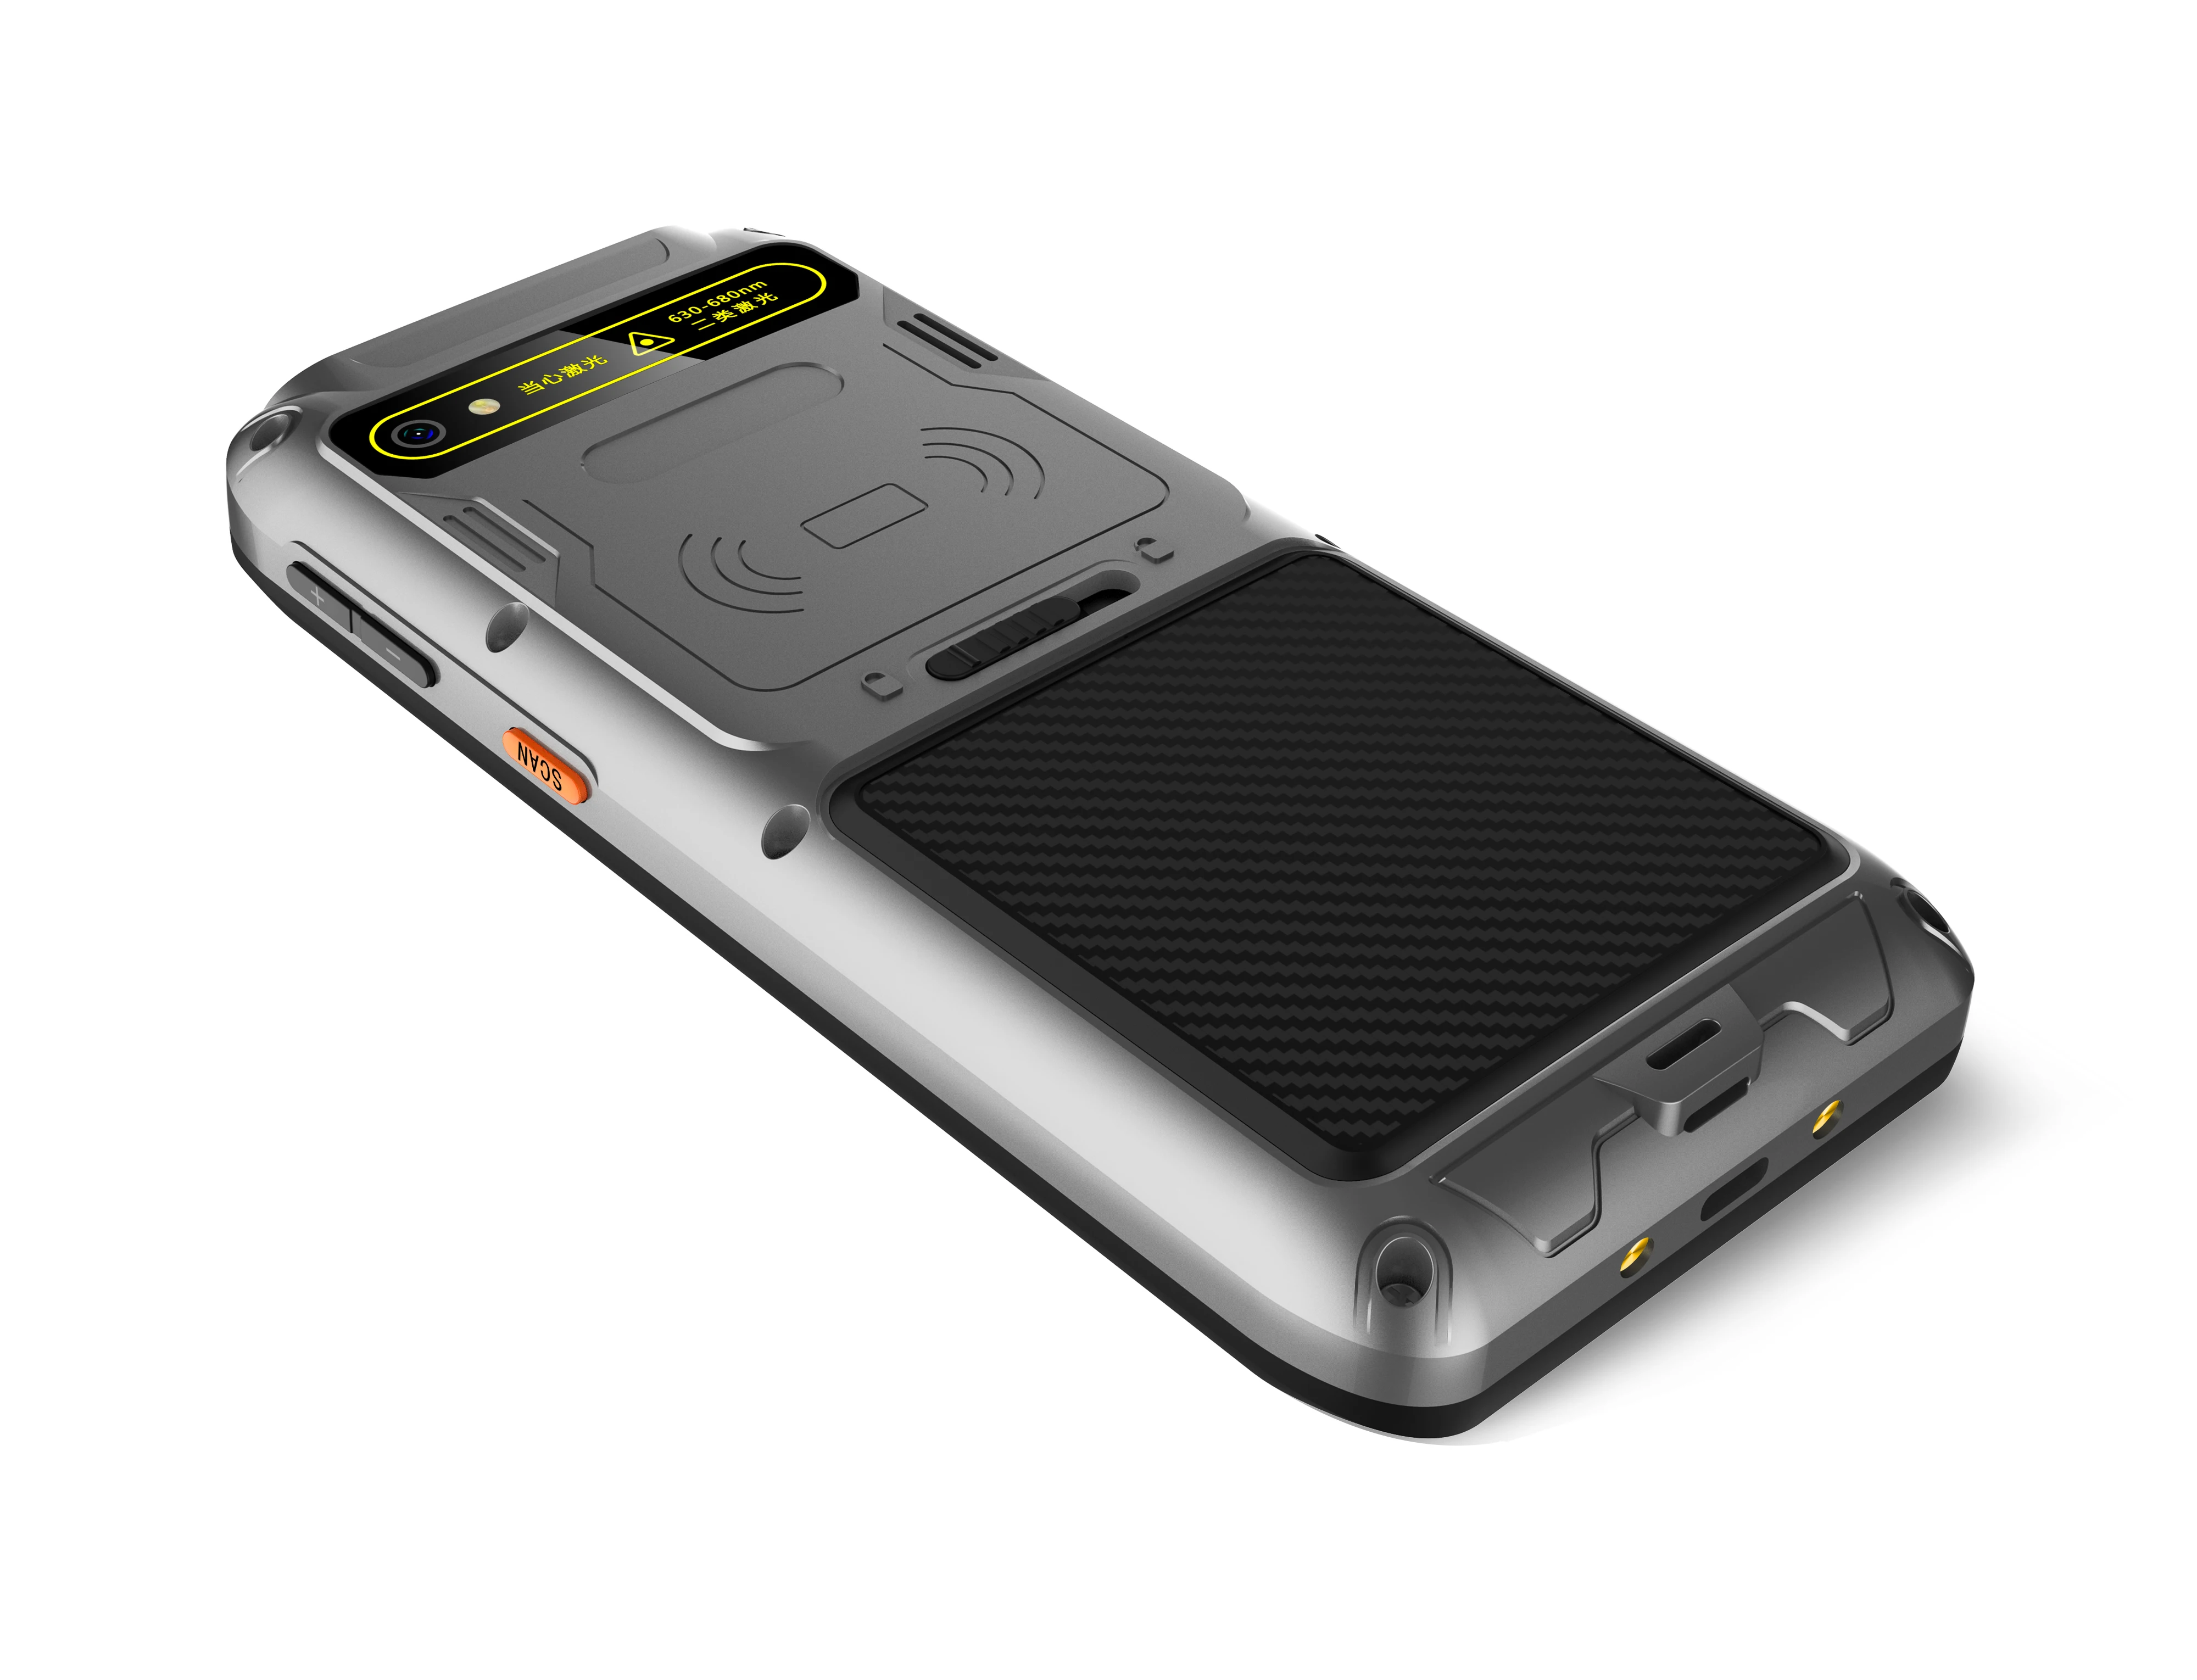 CARIBE 5,5 дюймов портативный КПК сборщик данных 1D/2D gps RFID КПК Android 8,1 телефон сканер штрих-кода